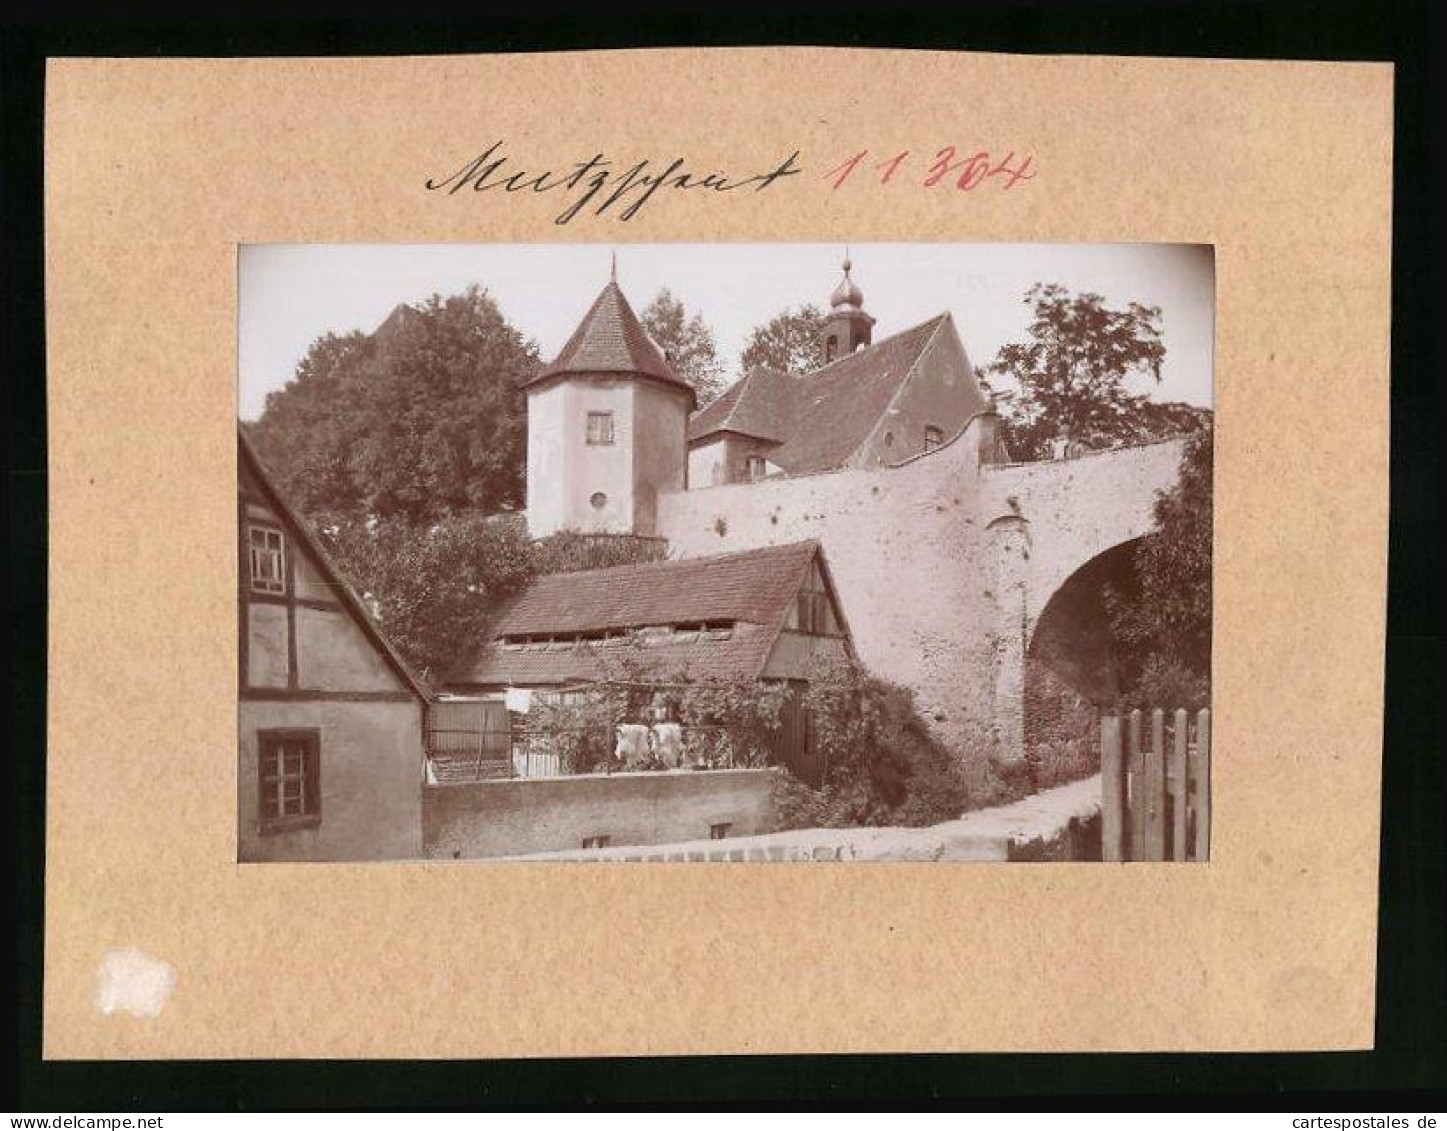 Fotografie Brück & Sohn Meissen, Ansicht Mutzschen, Partie Am Schloss  - Lieux